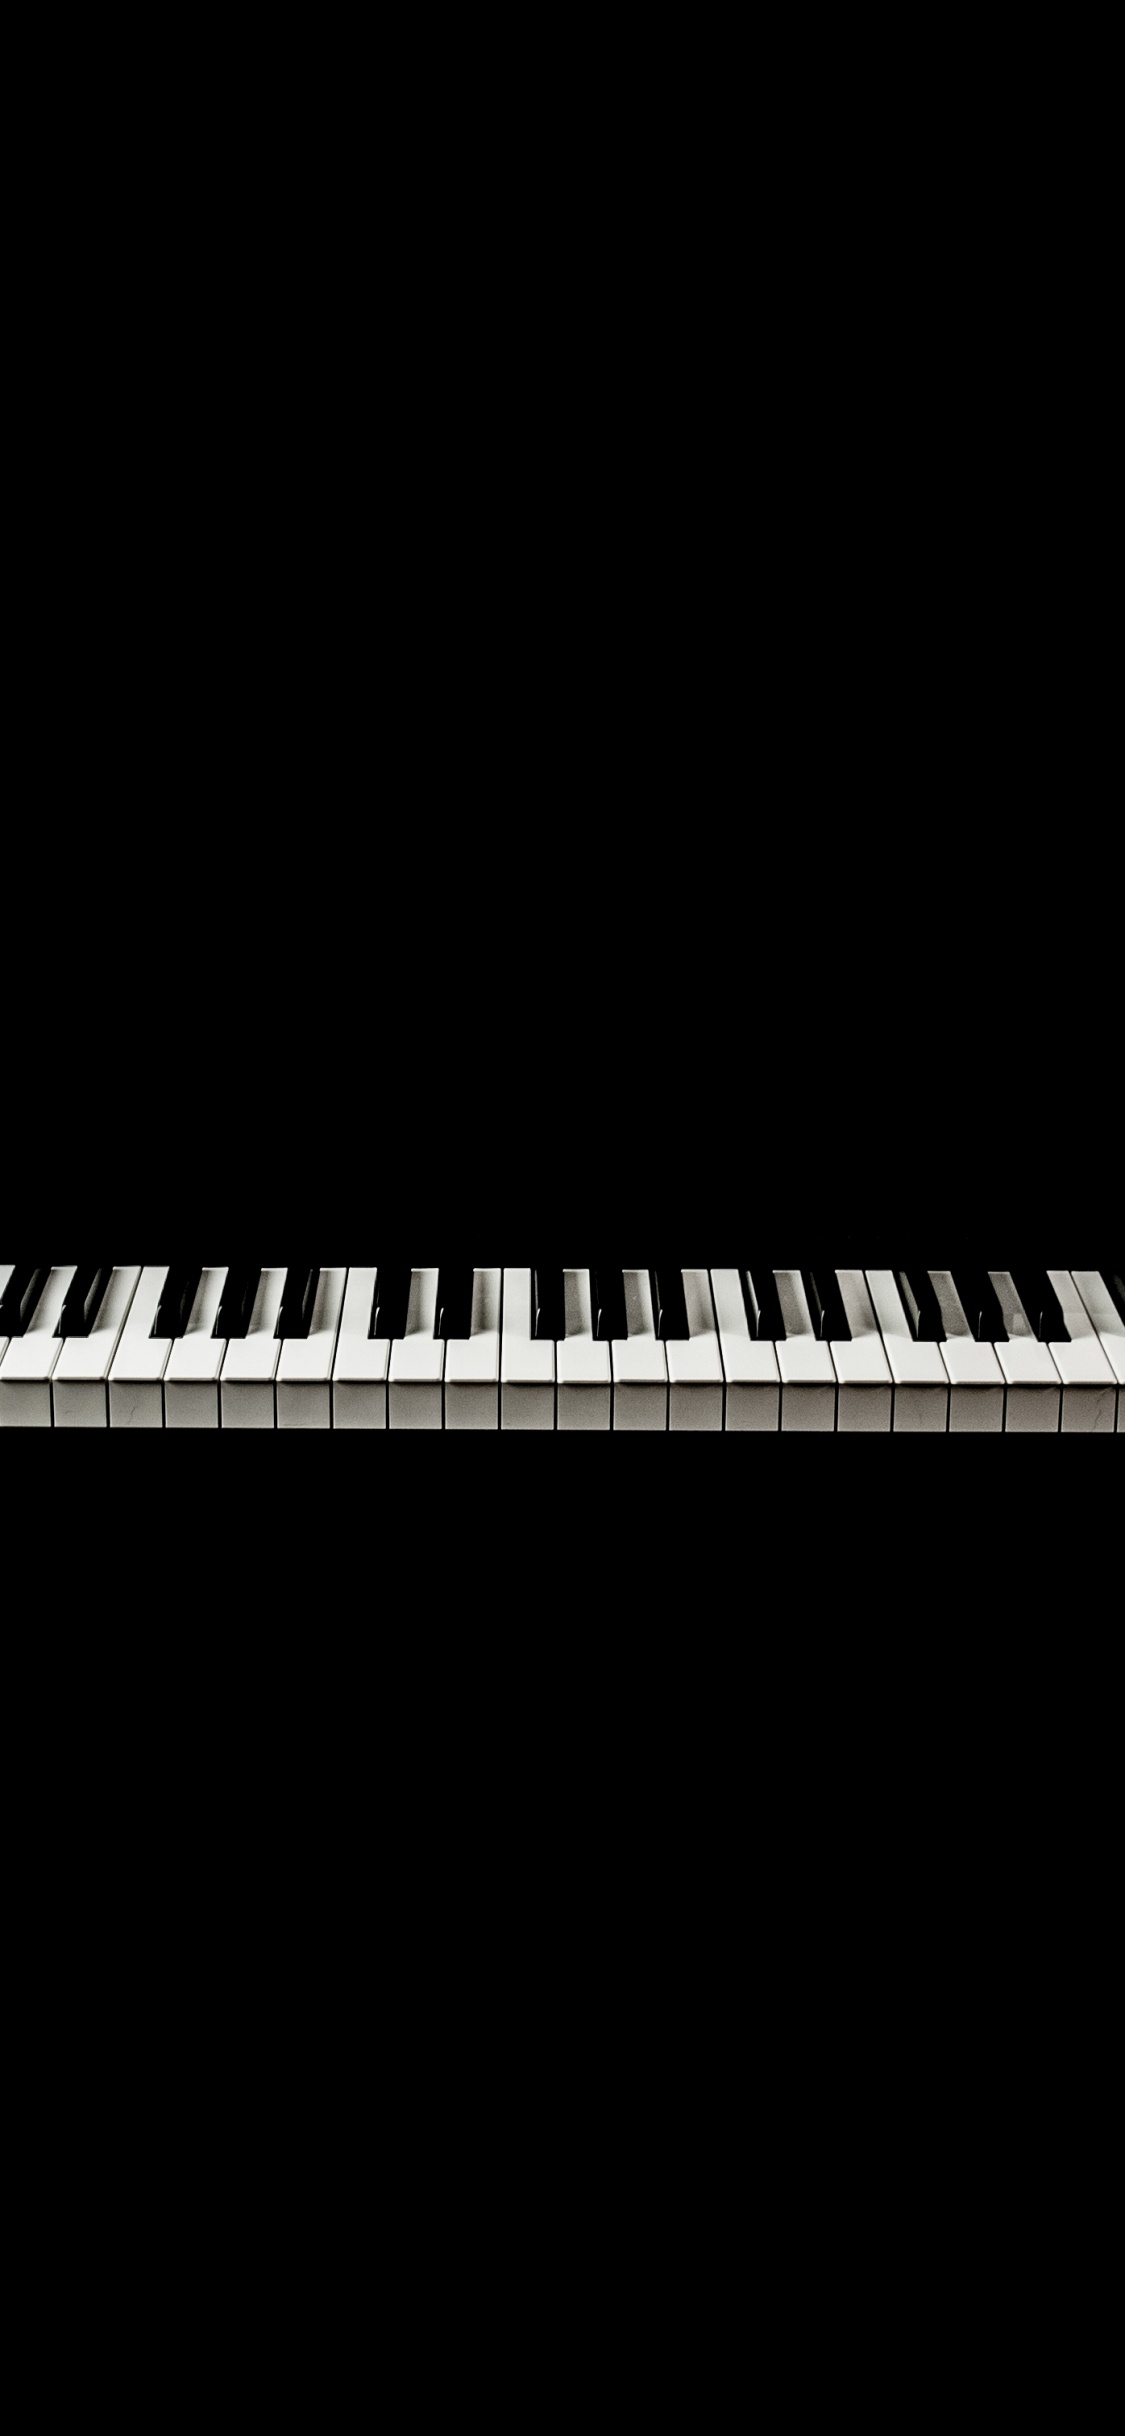 Teclado Musical, Piano Digital, Piano Eléctrico, Piano, Teclado. Wallpaper in 1125x2436 Resolution